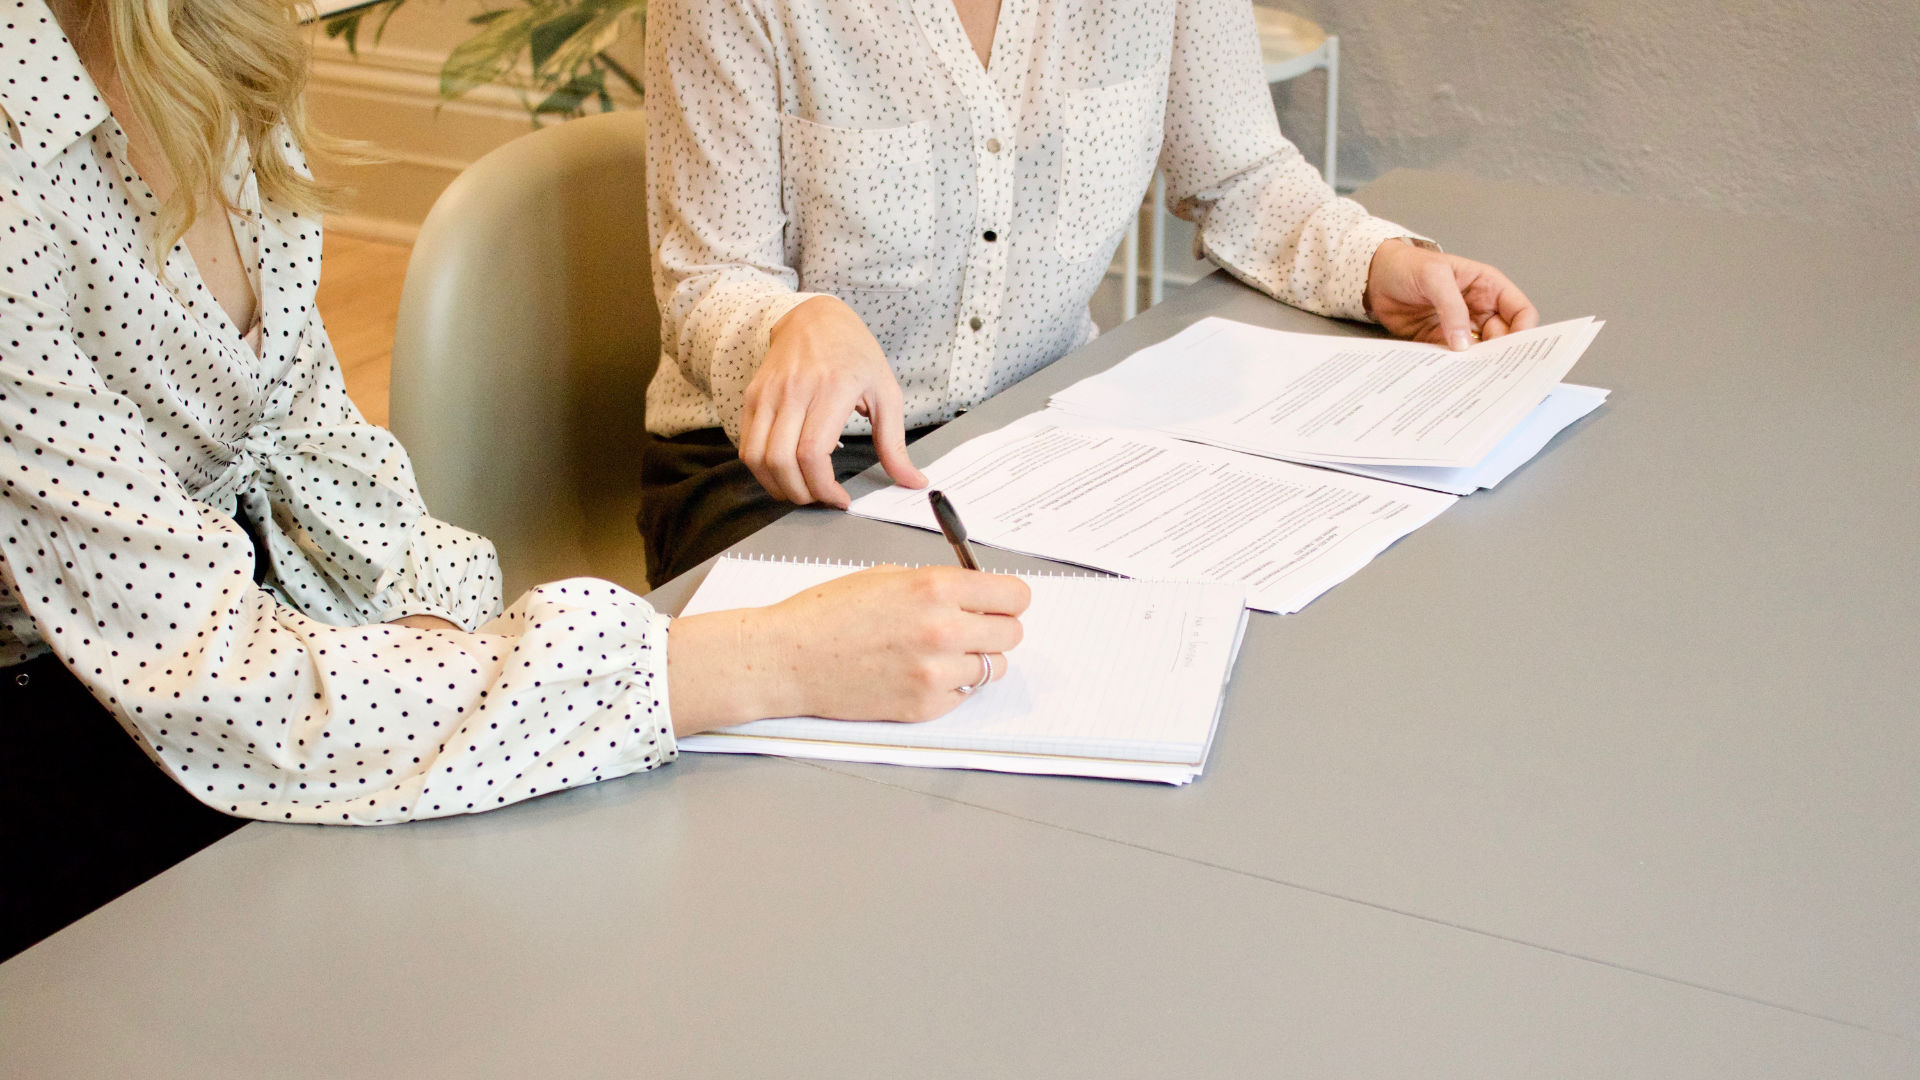 Deux femmes rédigeant un contrat de travail, élément clé de la gestion juridique d'entreprise